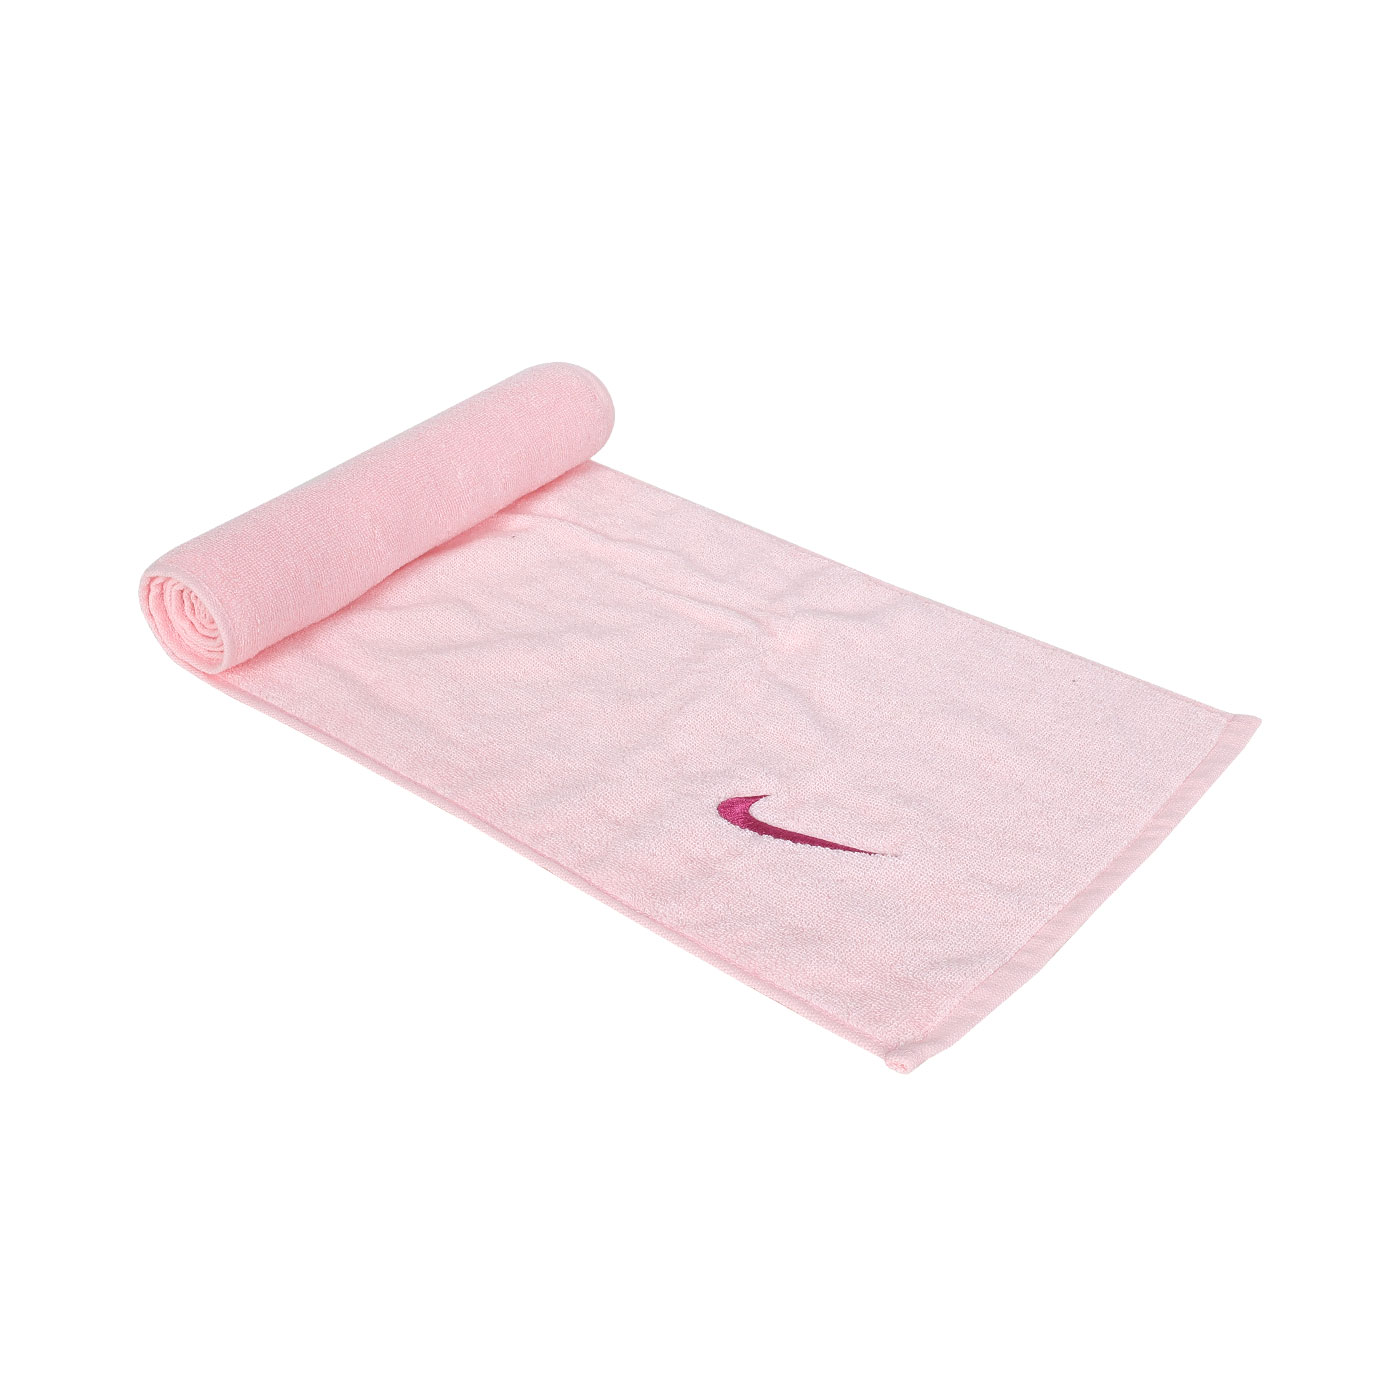 NIKE SOLID CORE 長型毛巾(120x25cm)  N1001540606NS - 淺粉桃紅